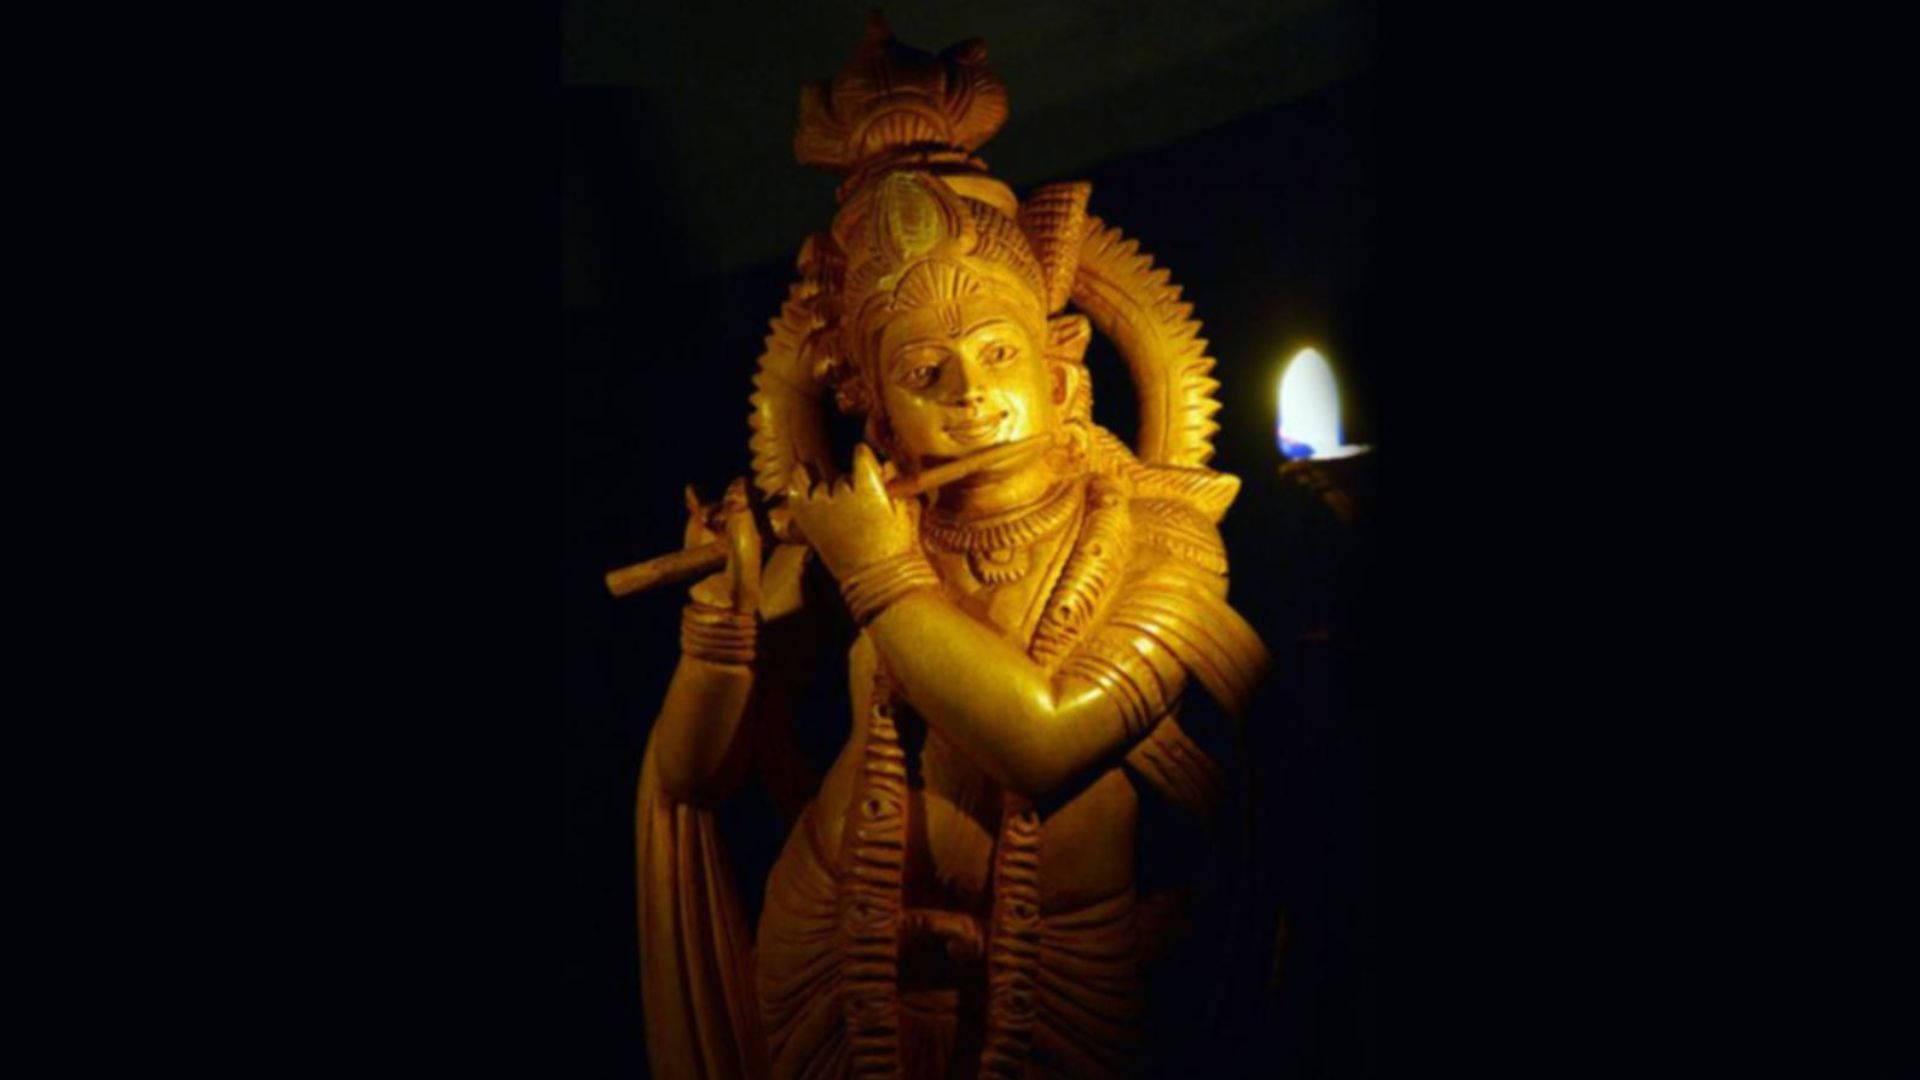 Dunklerkrishna Goldene Statue. Wallpaper